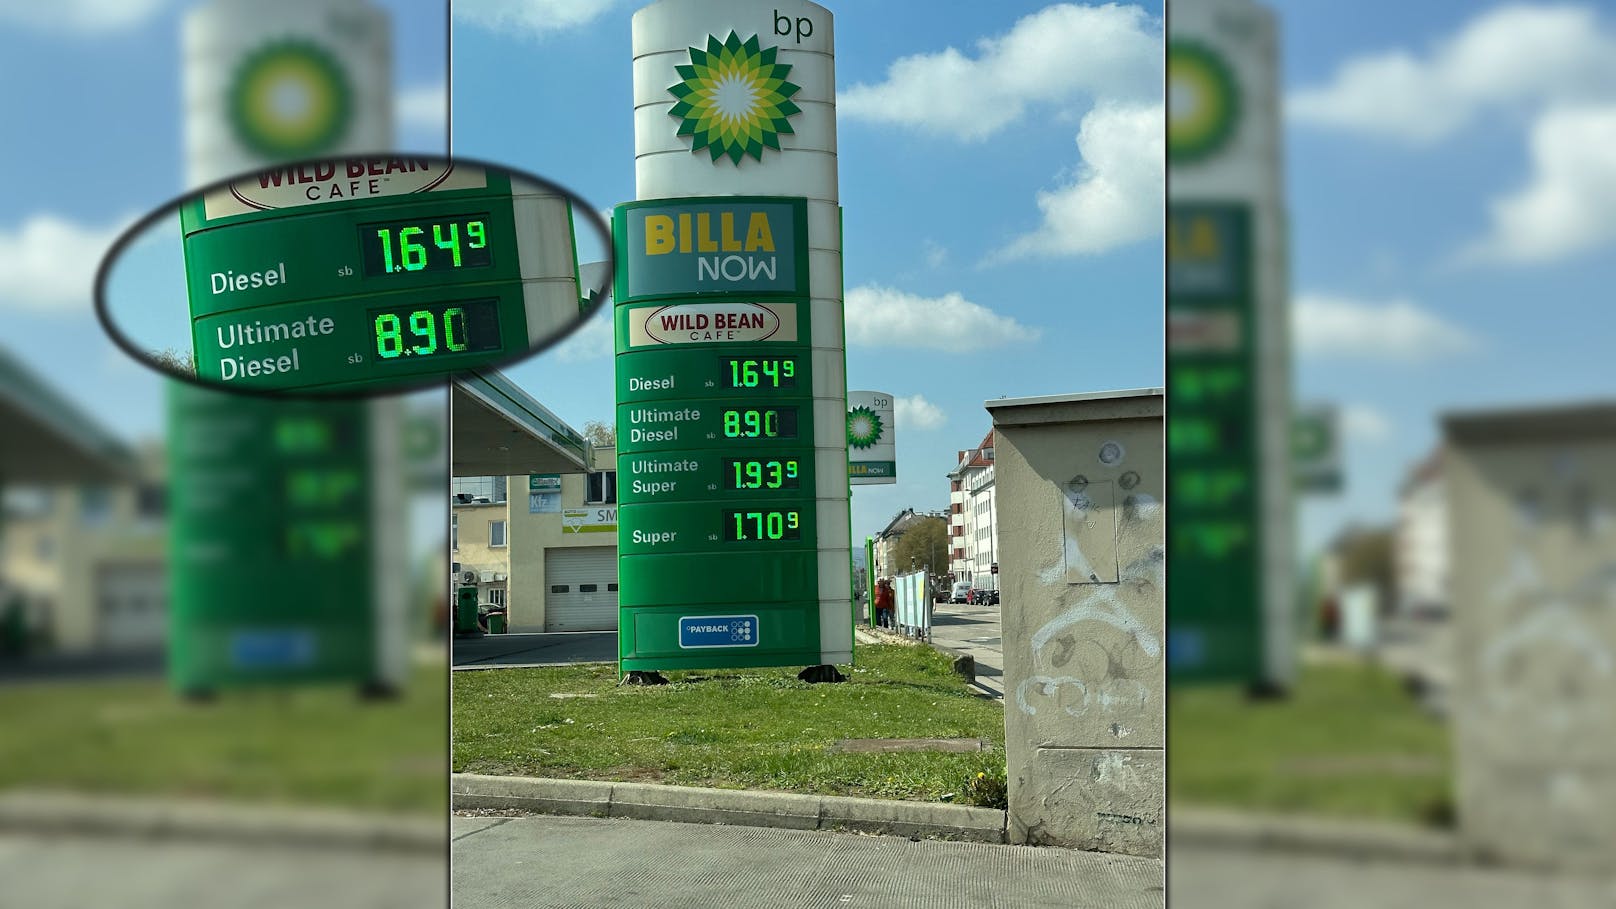 Seit Montag sorgt leuchtet ein dubioser Preis für den "Ultimative Diesel" in einer Meidlinger BP-Tankstelle auf.